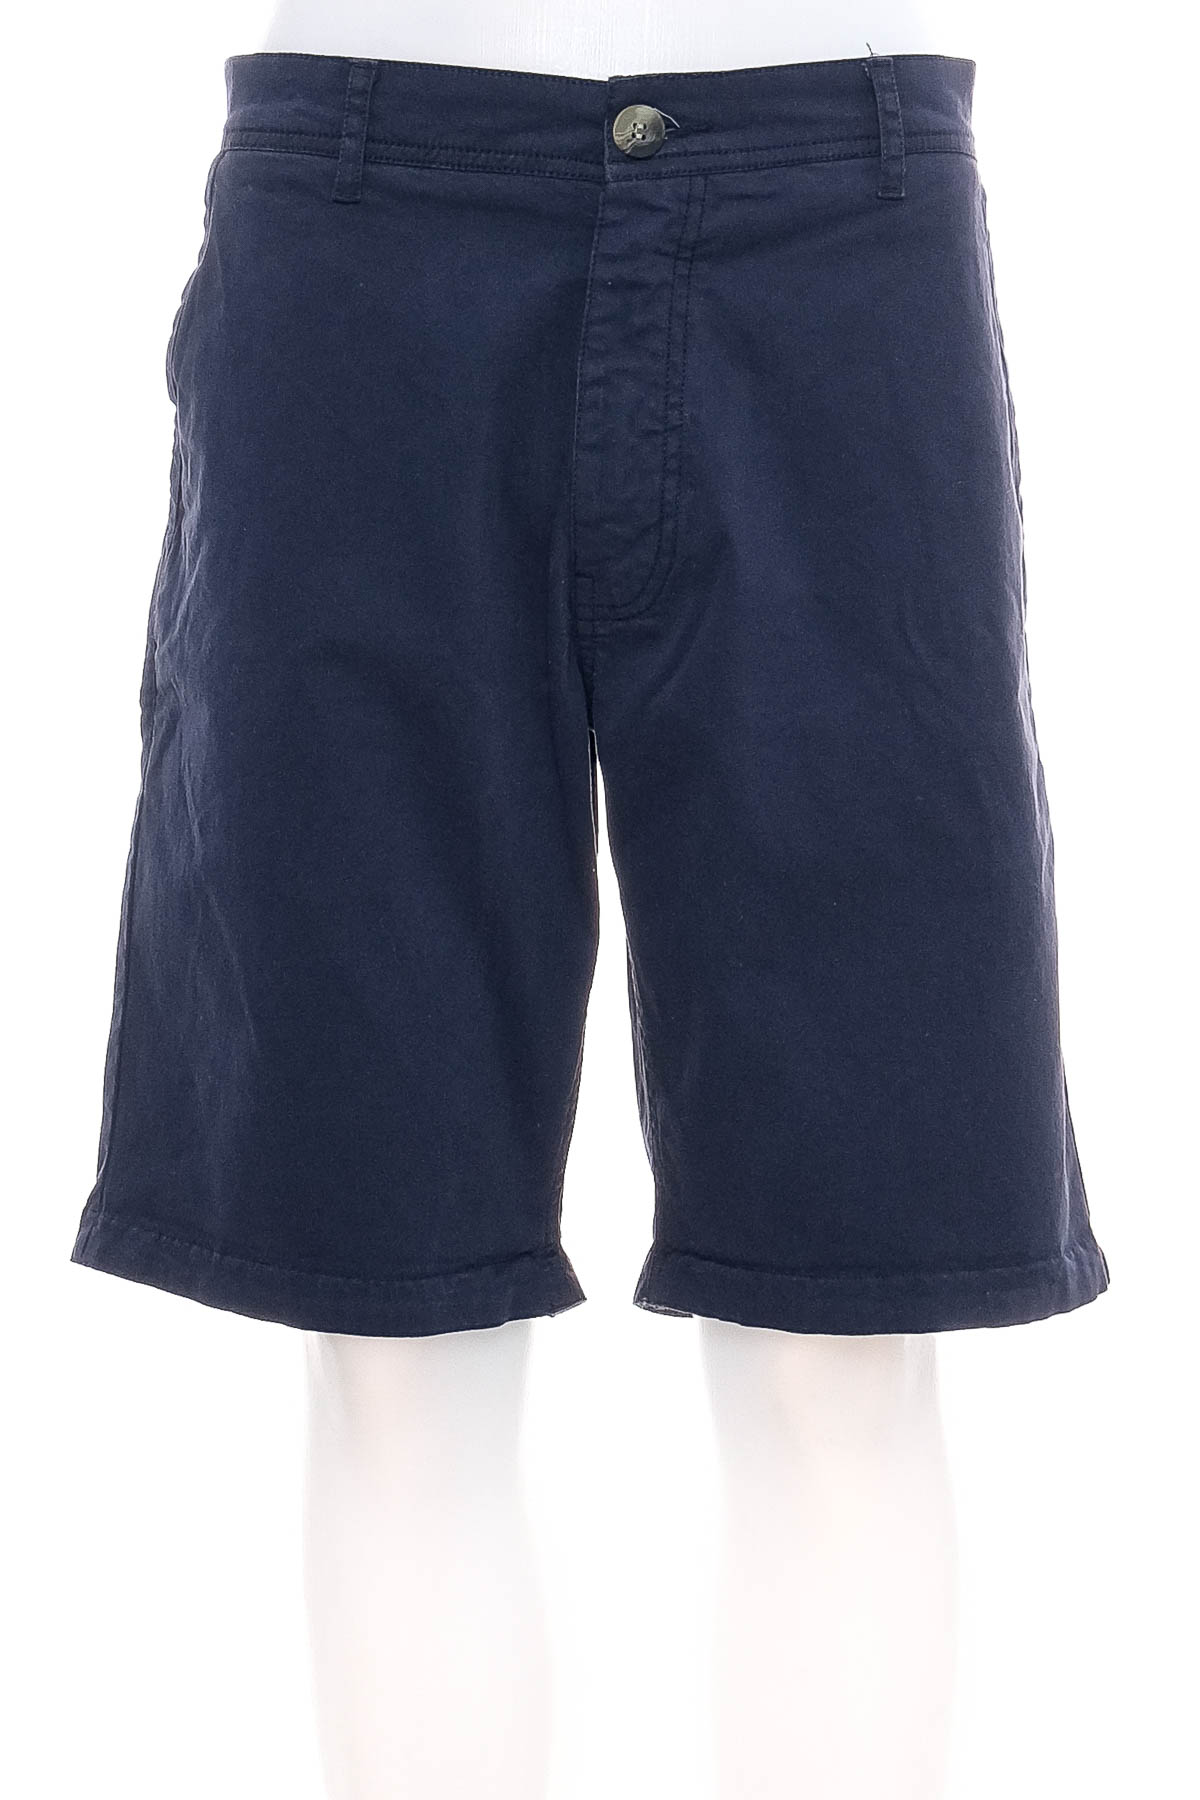 Men's shorts - Sun Valley - 0